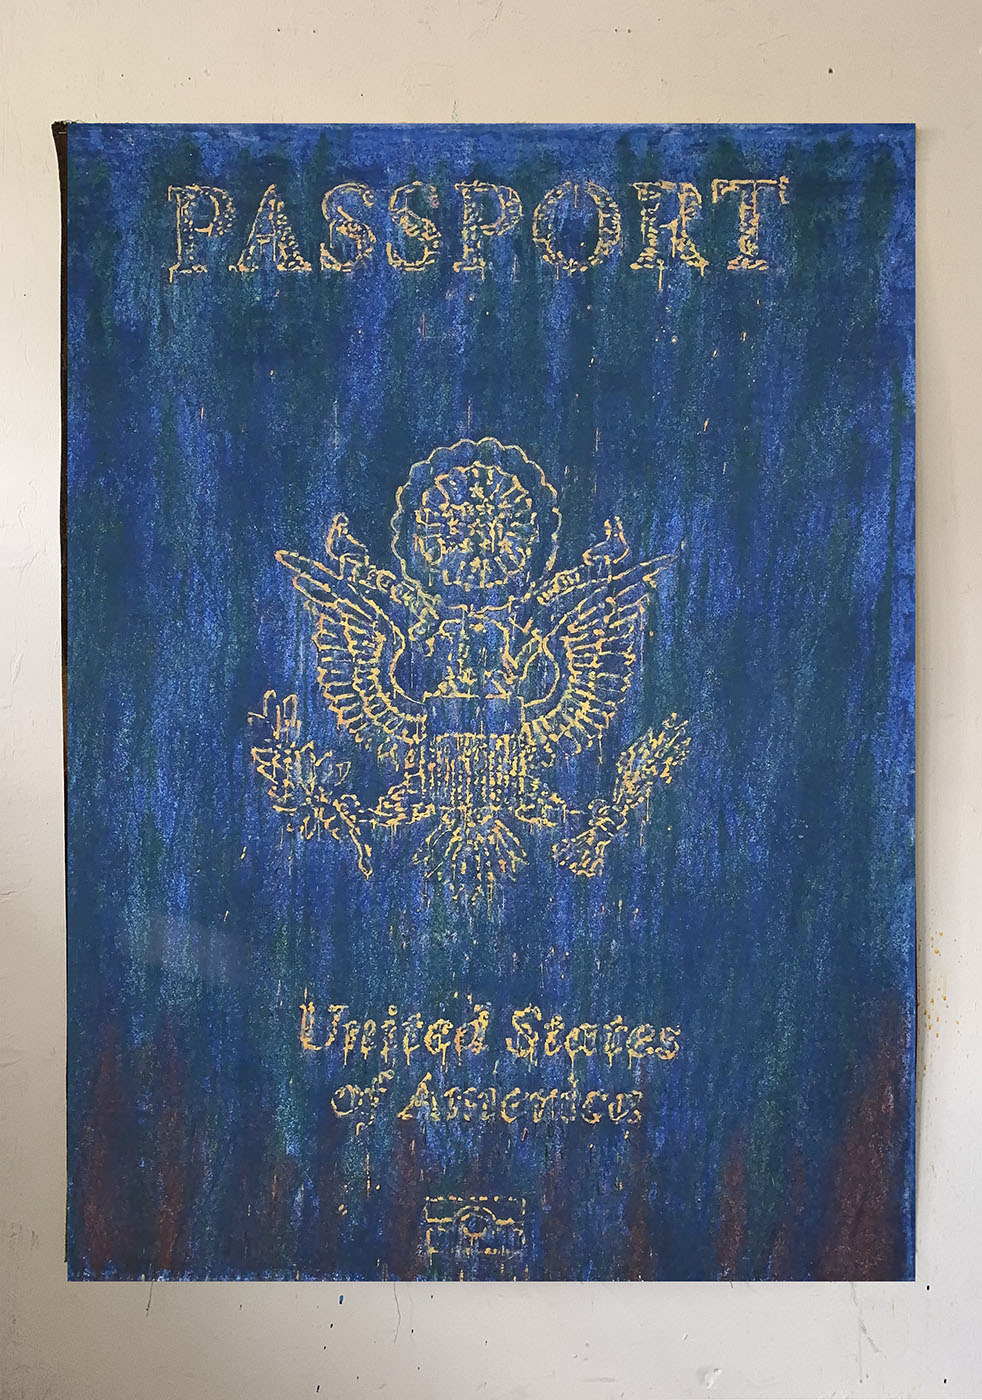 Passeport américain, 56x45 in, techniques mixtes sur toile, 2022.